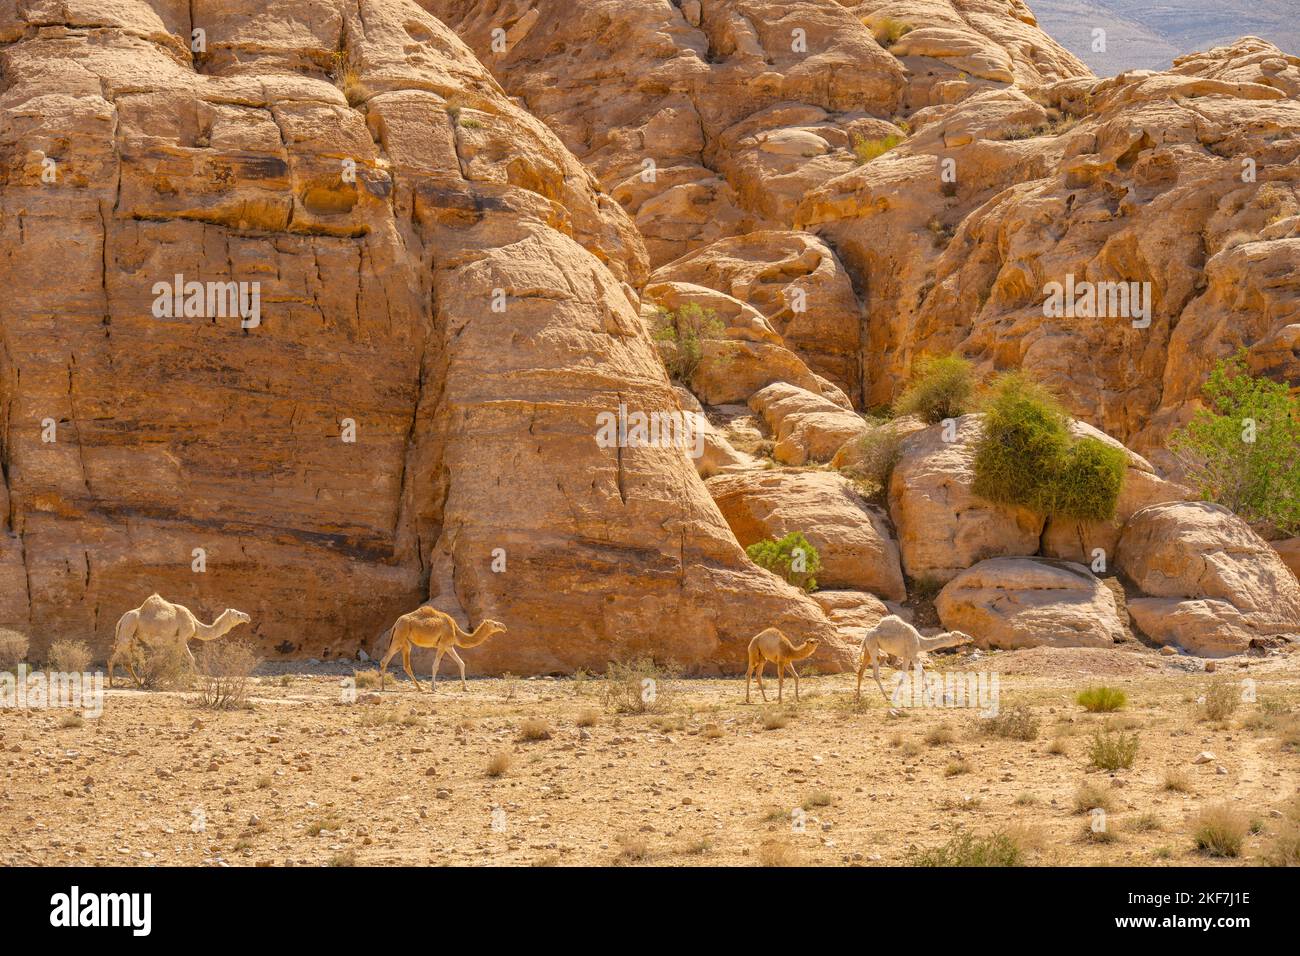 Troupeau de chameaux dans le désert près de Little Petra, Siq al-Barid, Jordanie Banque D'Images